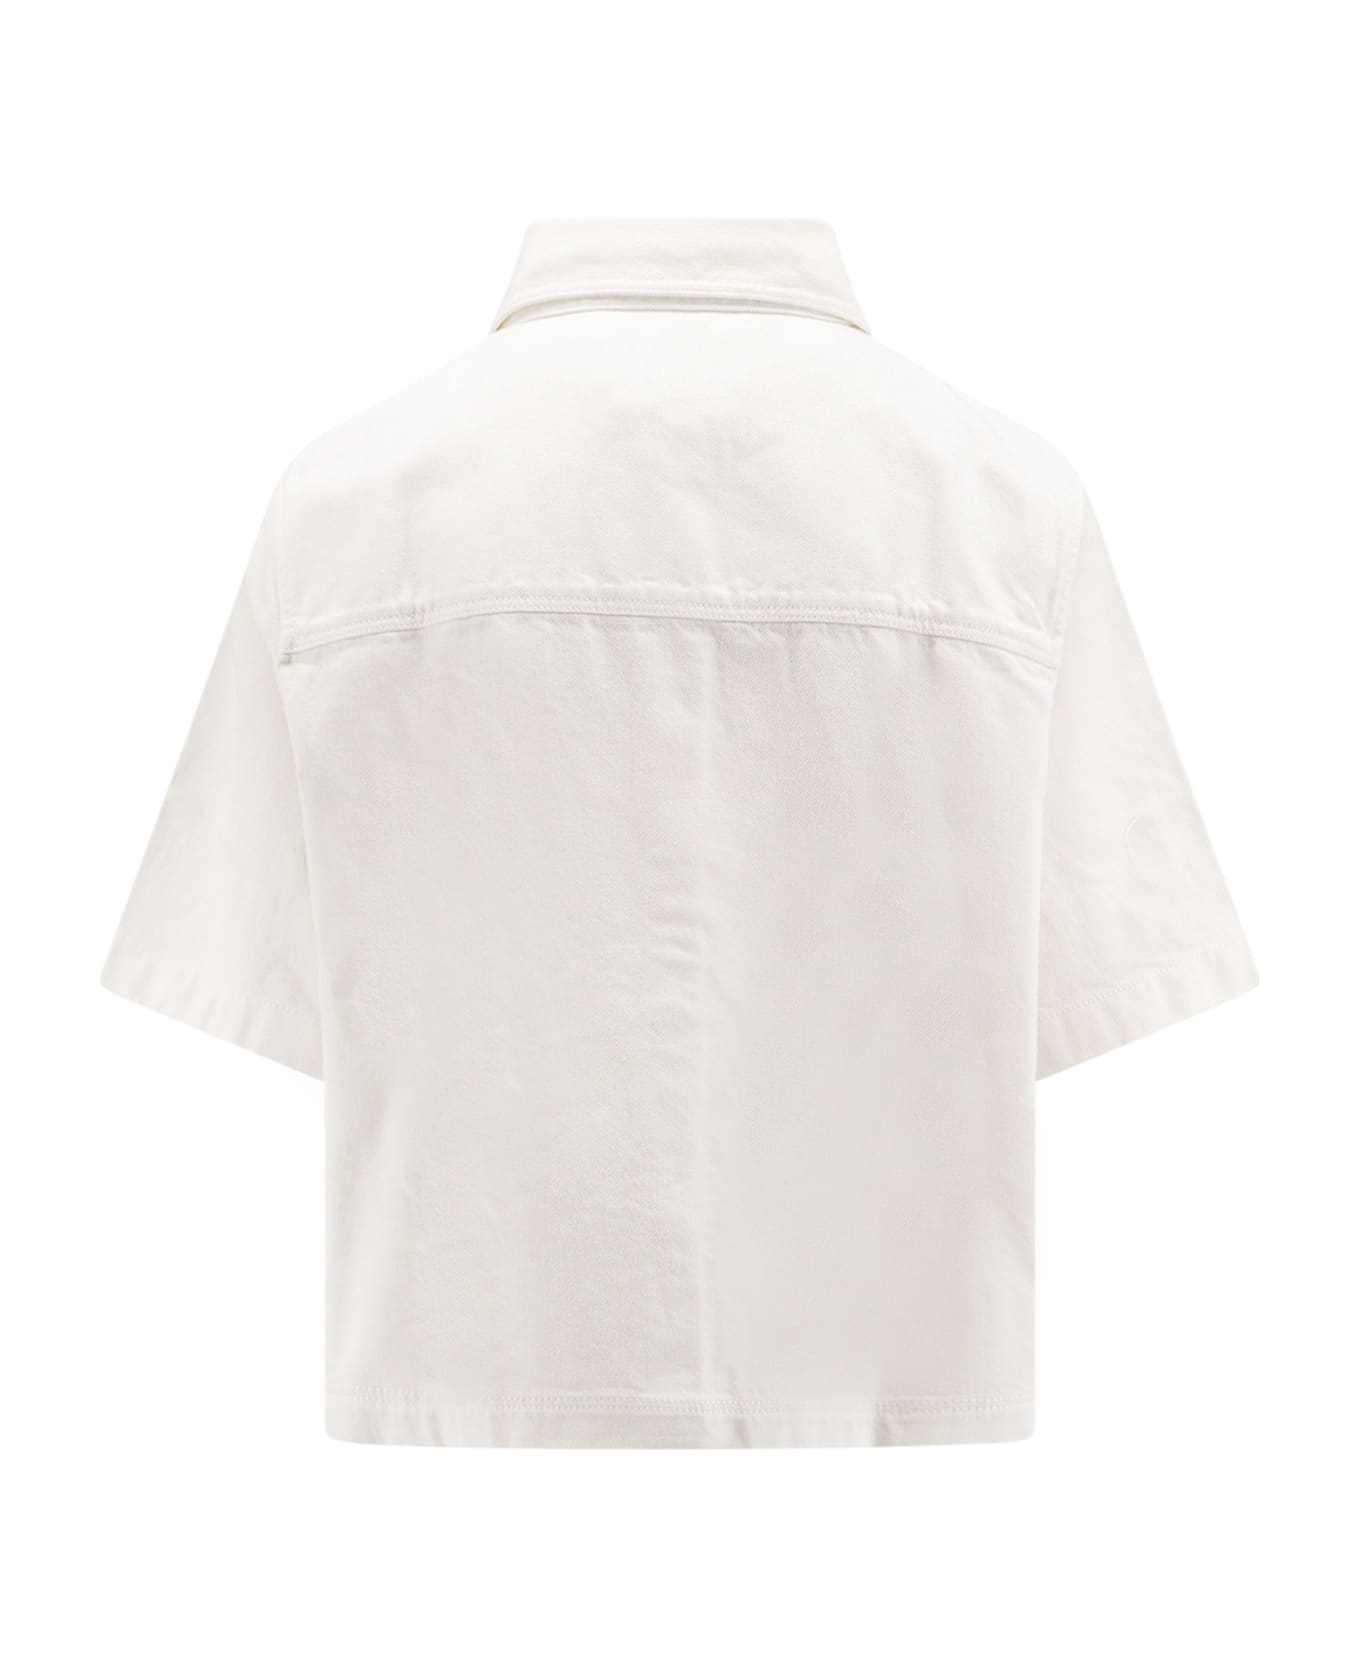 Closed Shirt - White